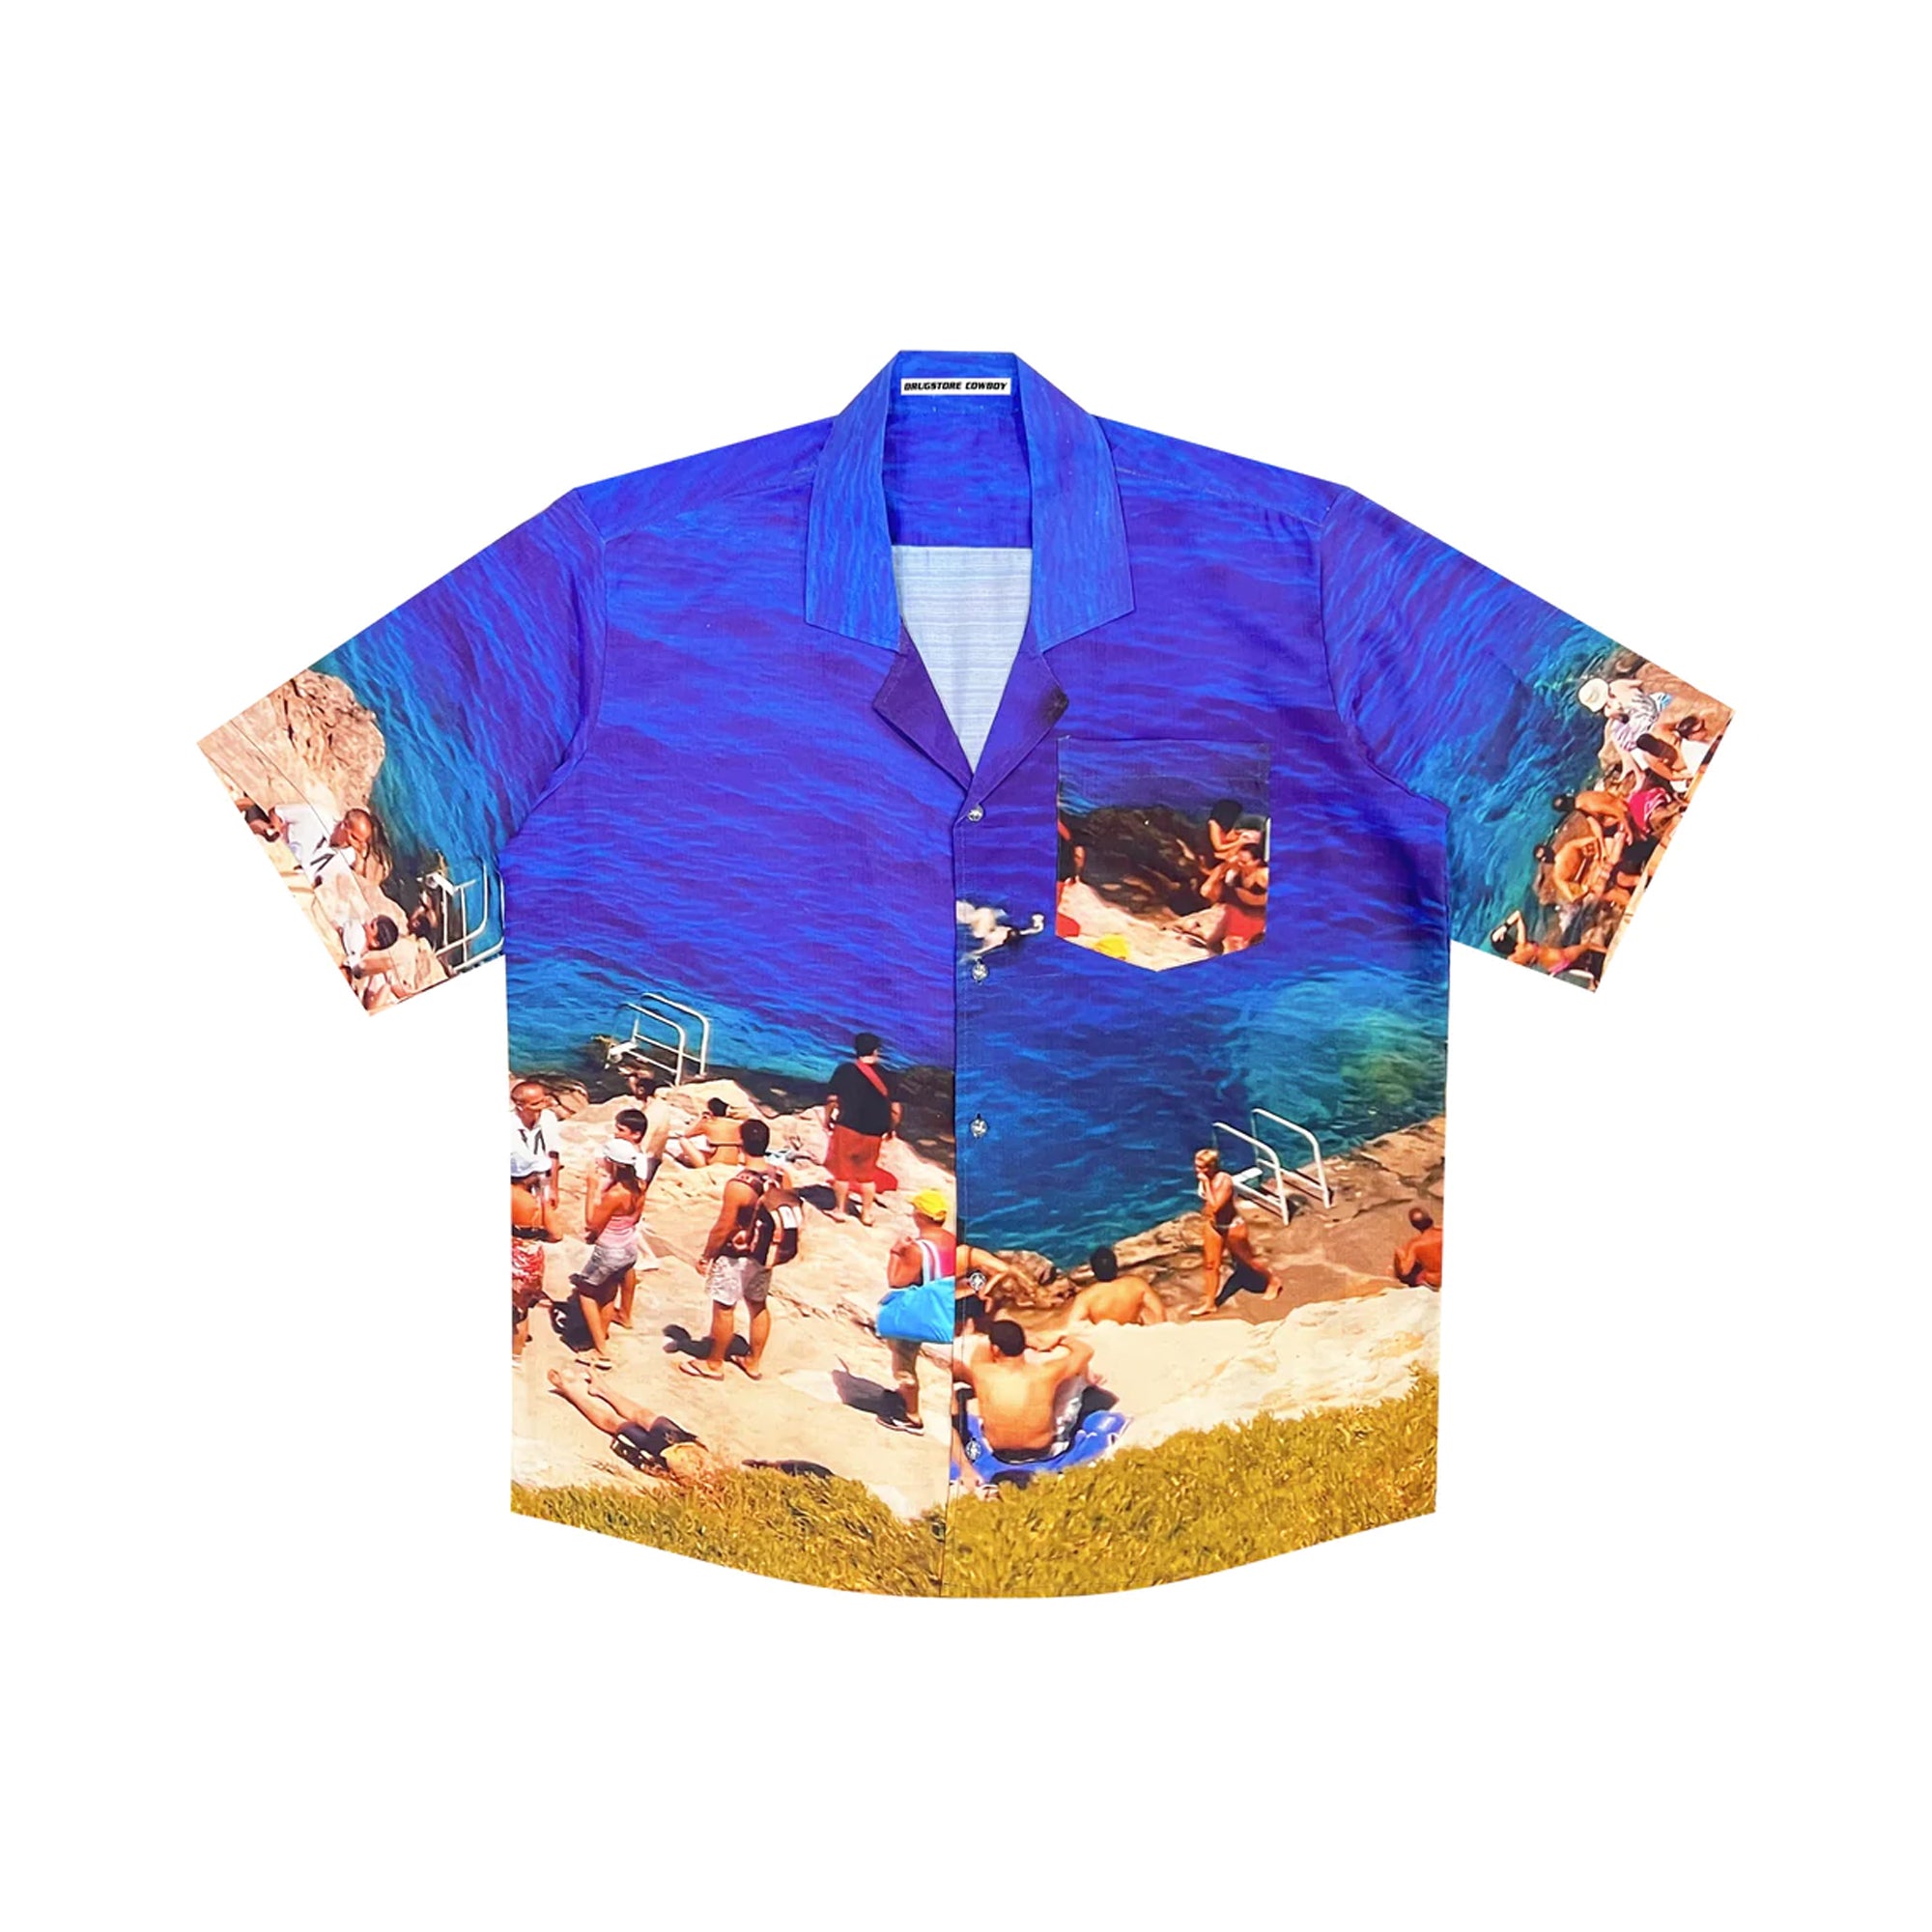 The Glorious Greece Summer shirt